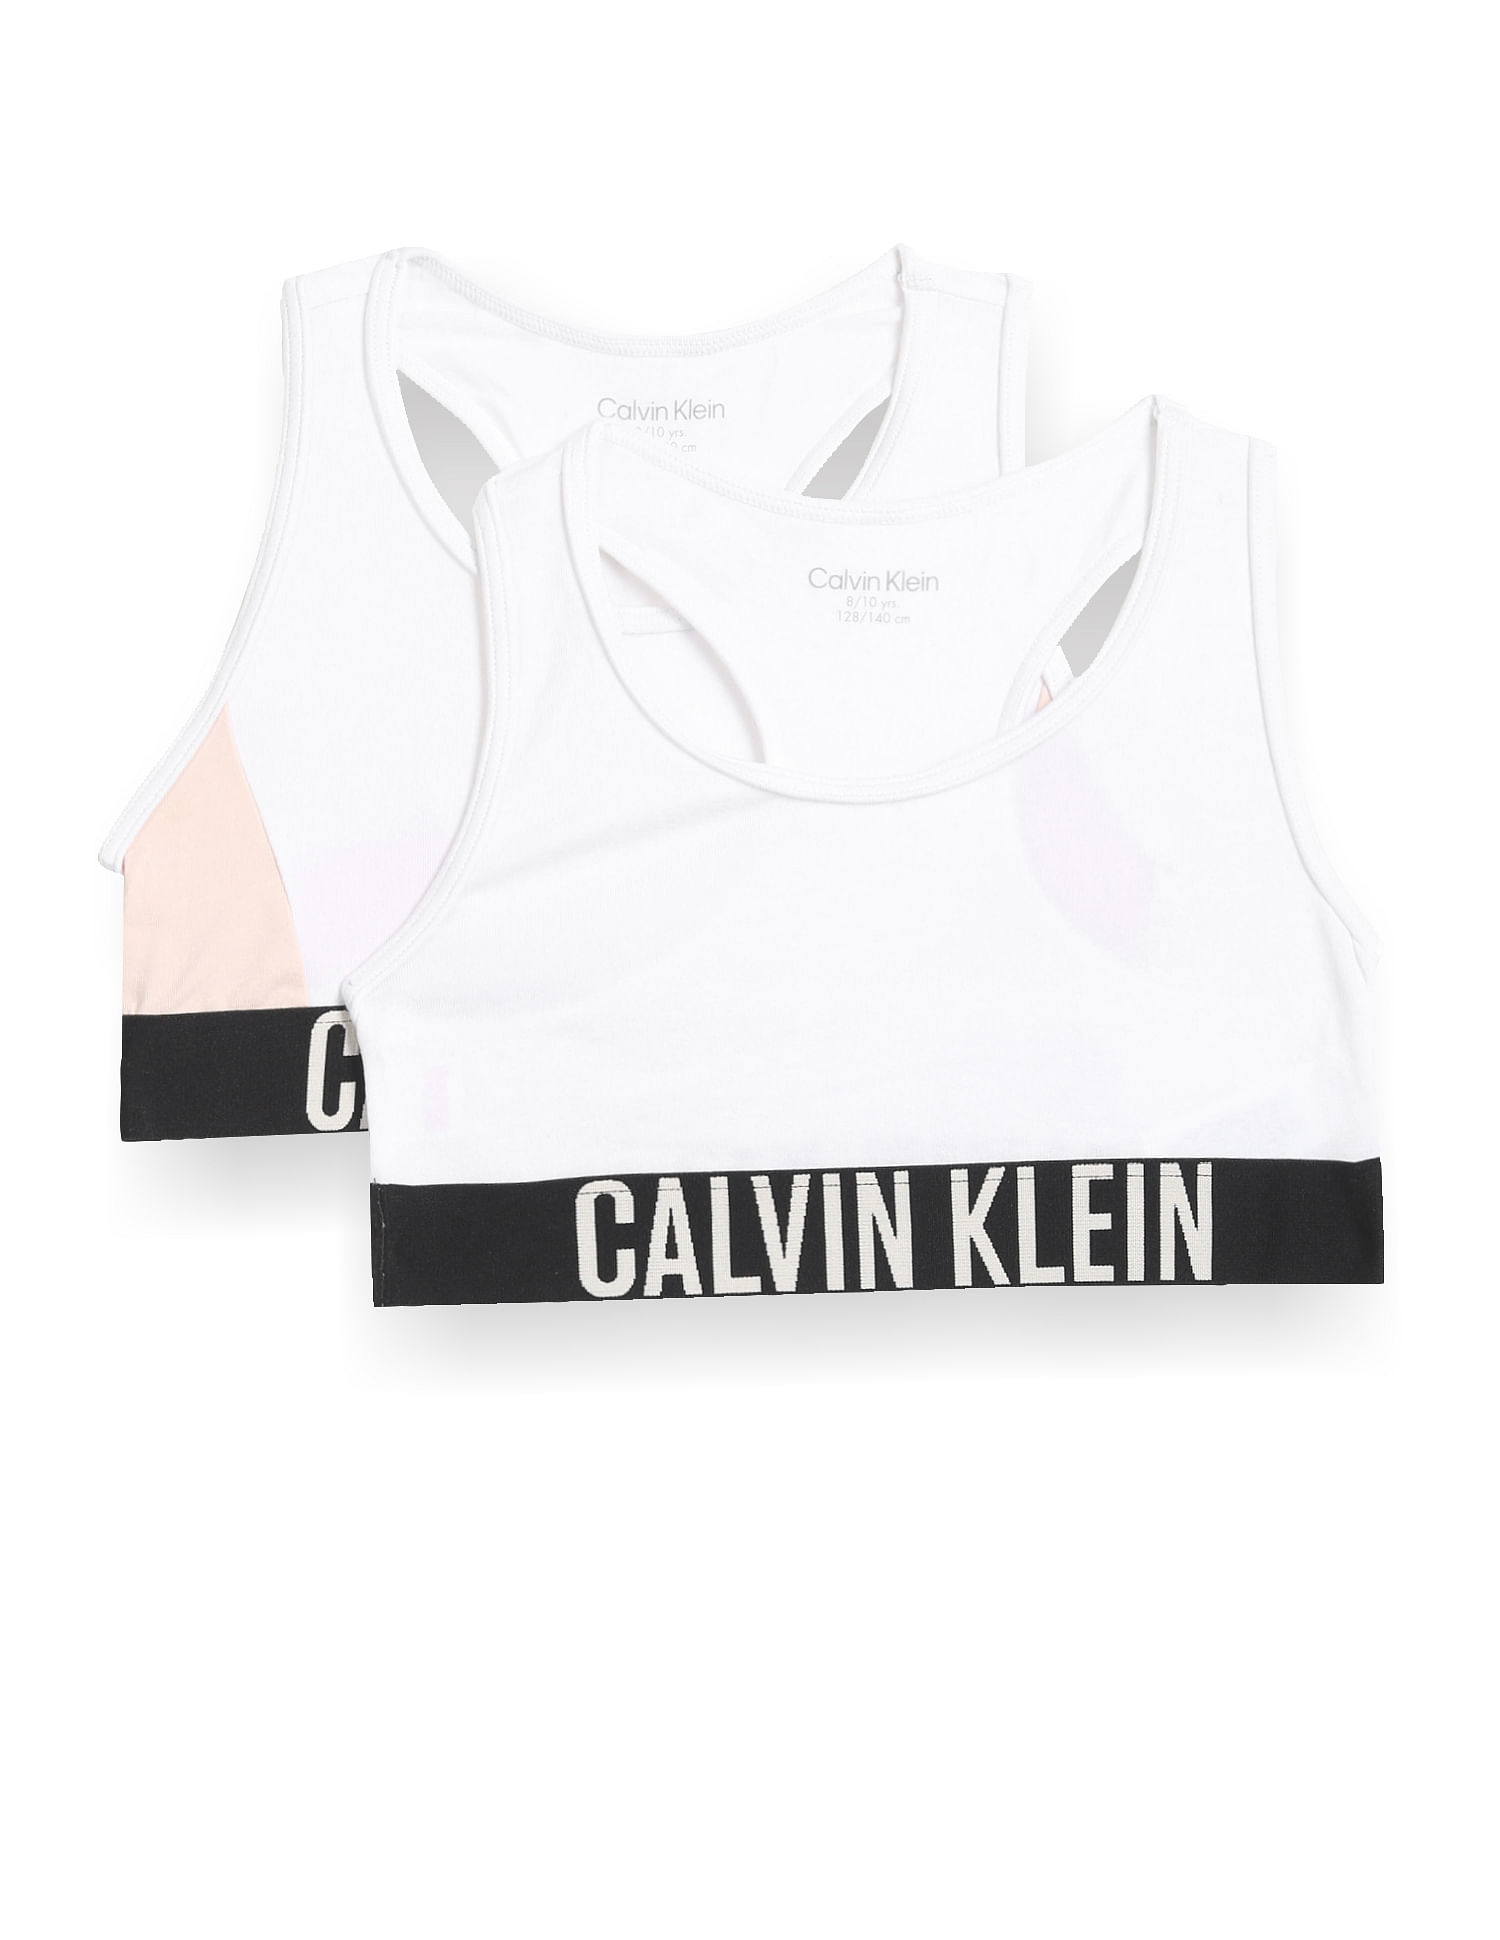 Calvin Klein Girls Black & White Bra Tops (2-Pack)